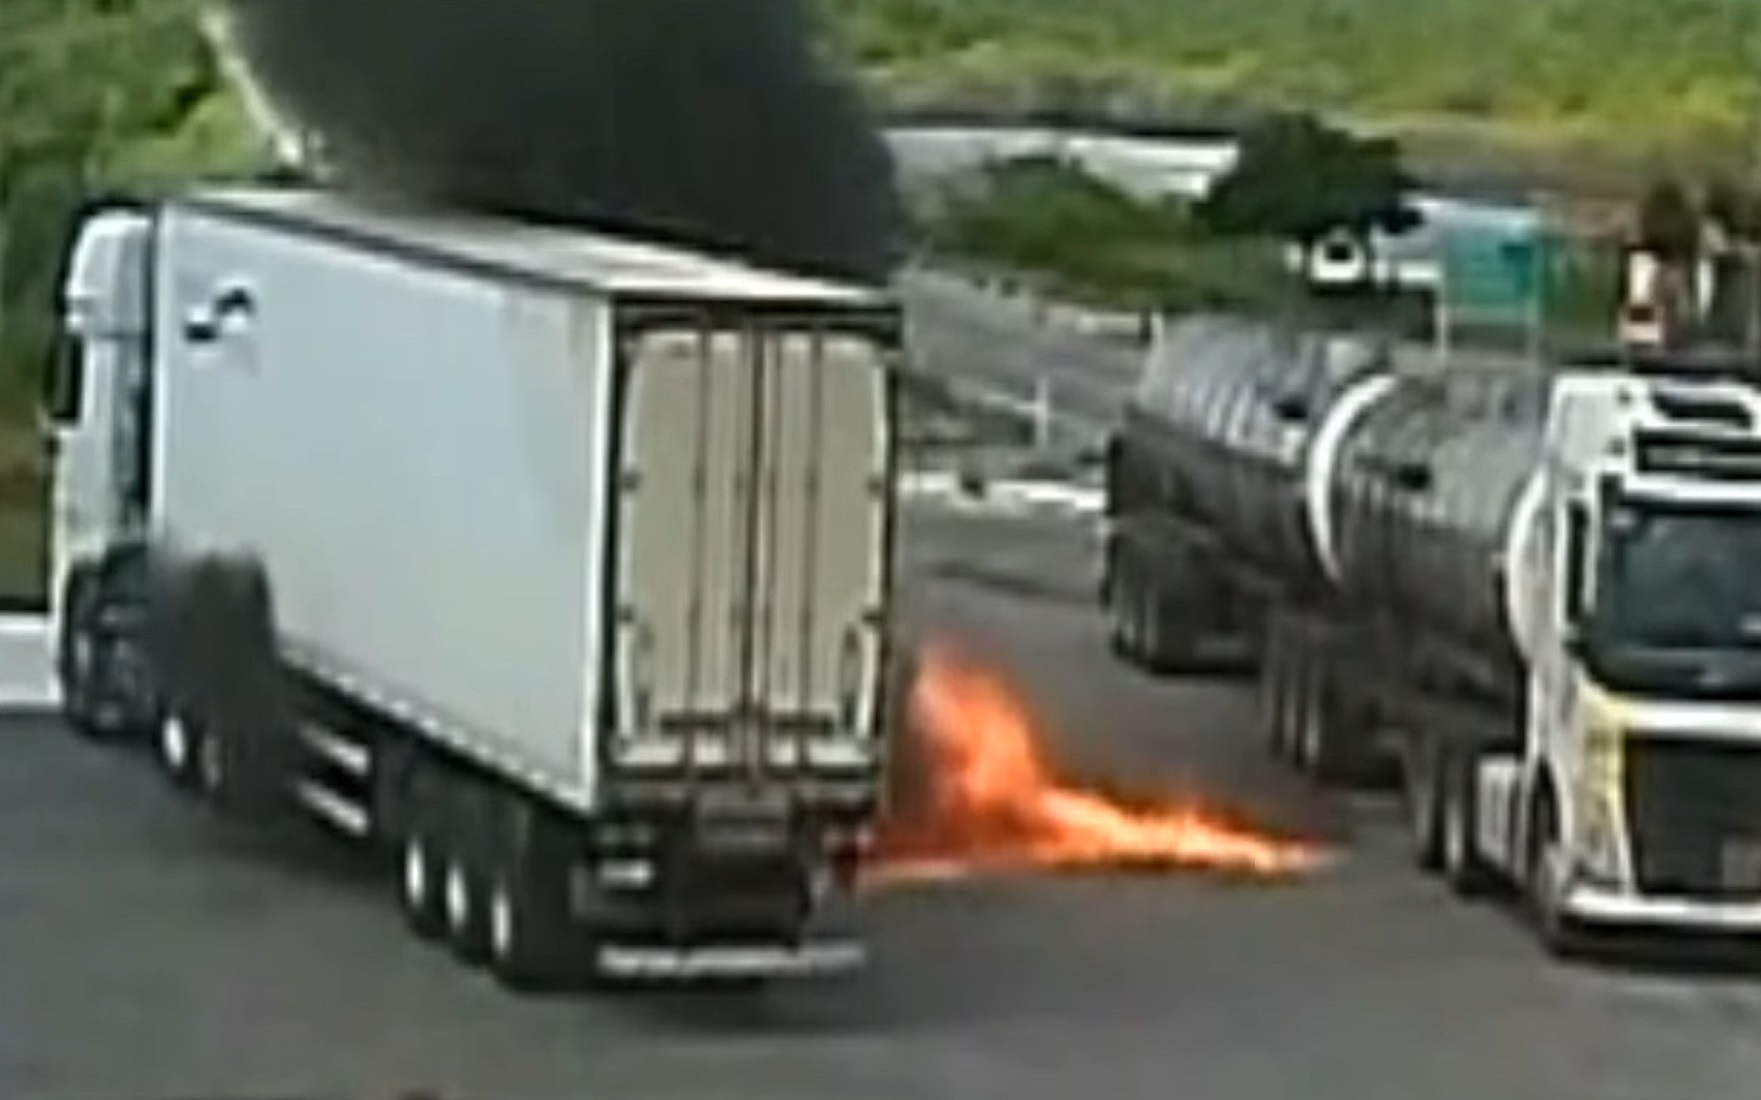 Tragédia no Vale do Aço: caminhoneiro morre após incêndio em carreta